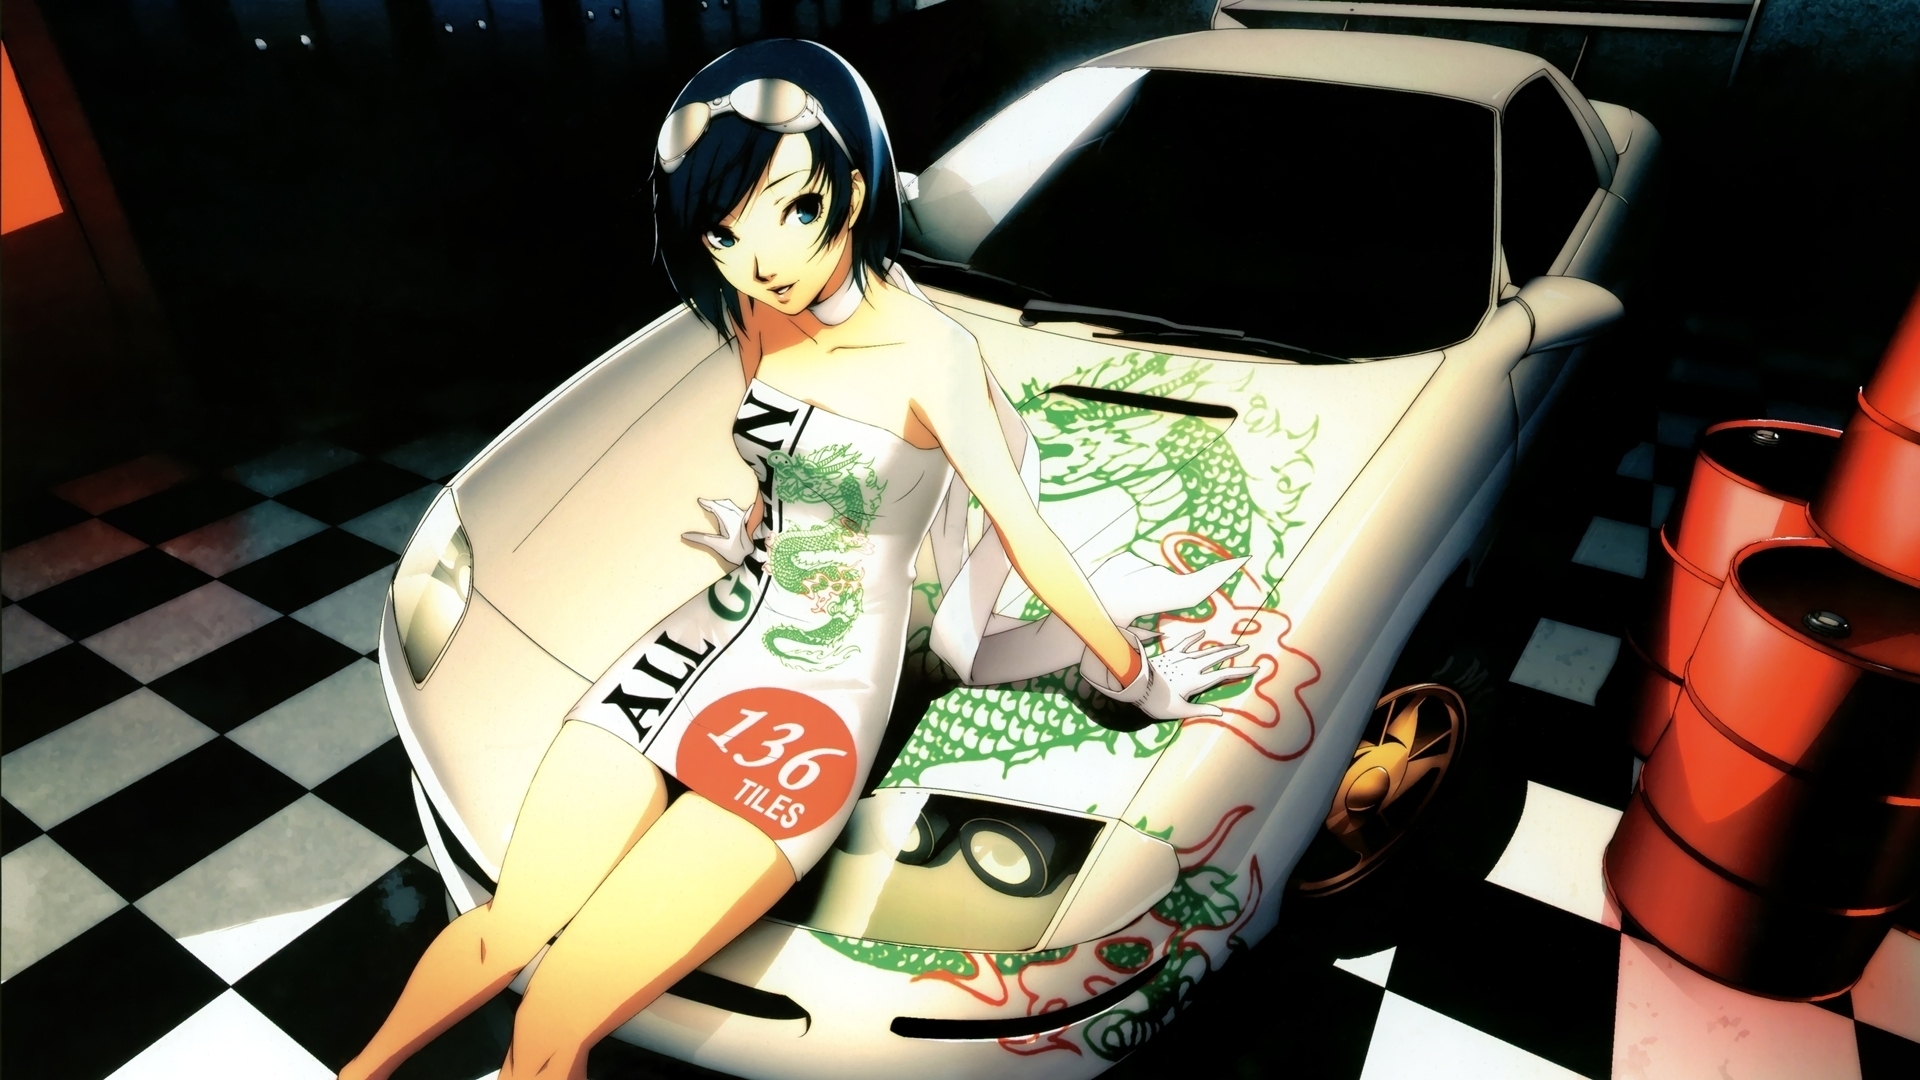 Anime Girl Car Wallpaper - 1920x1080 Wallpaper 